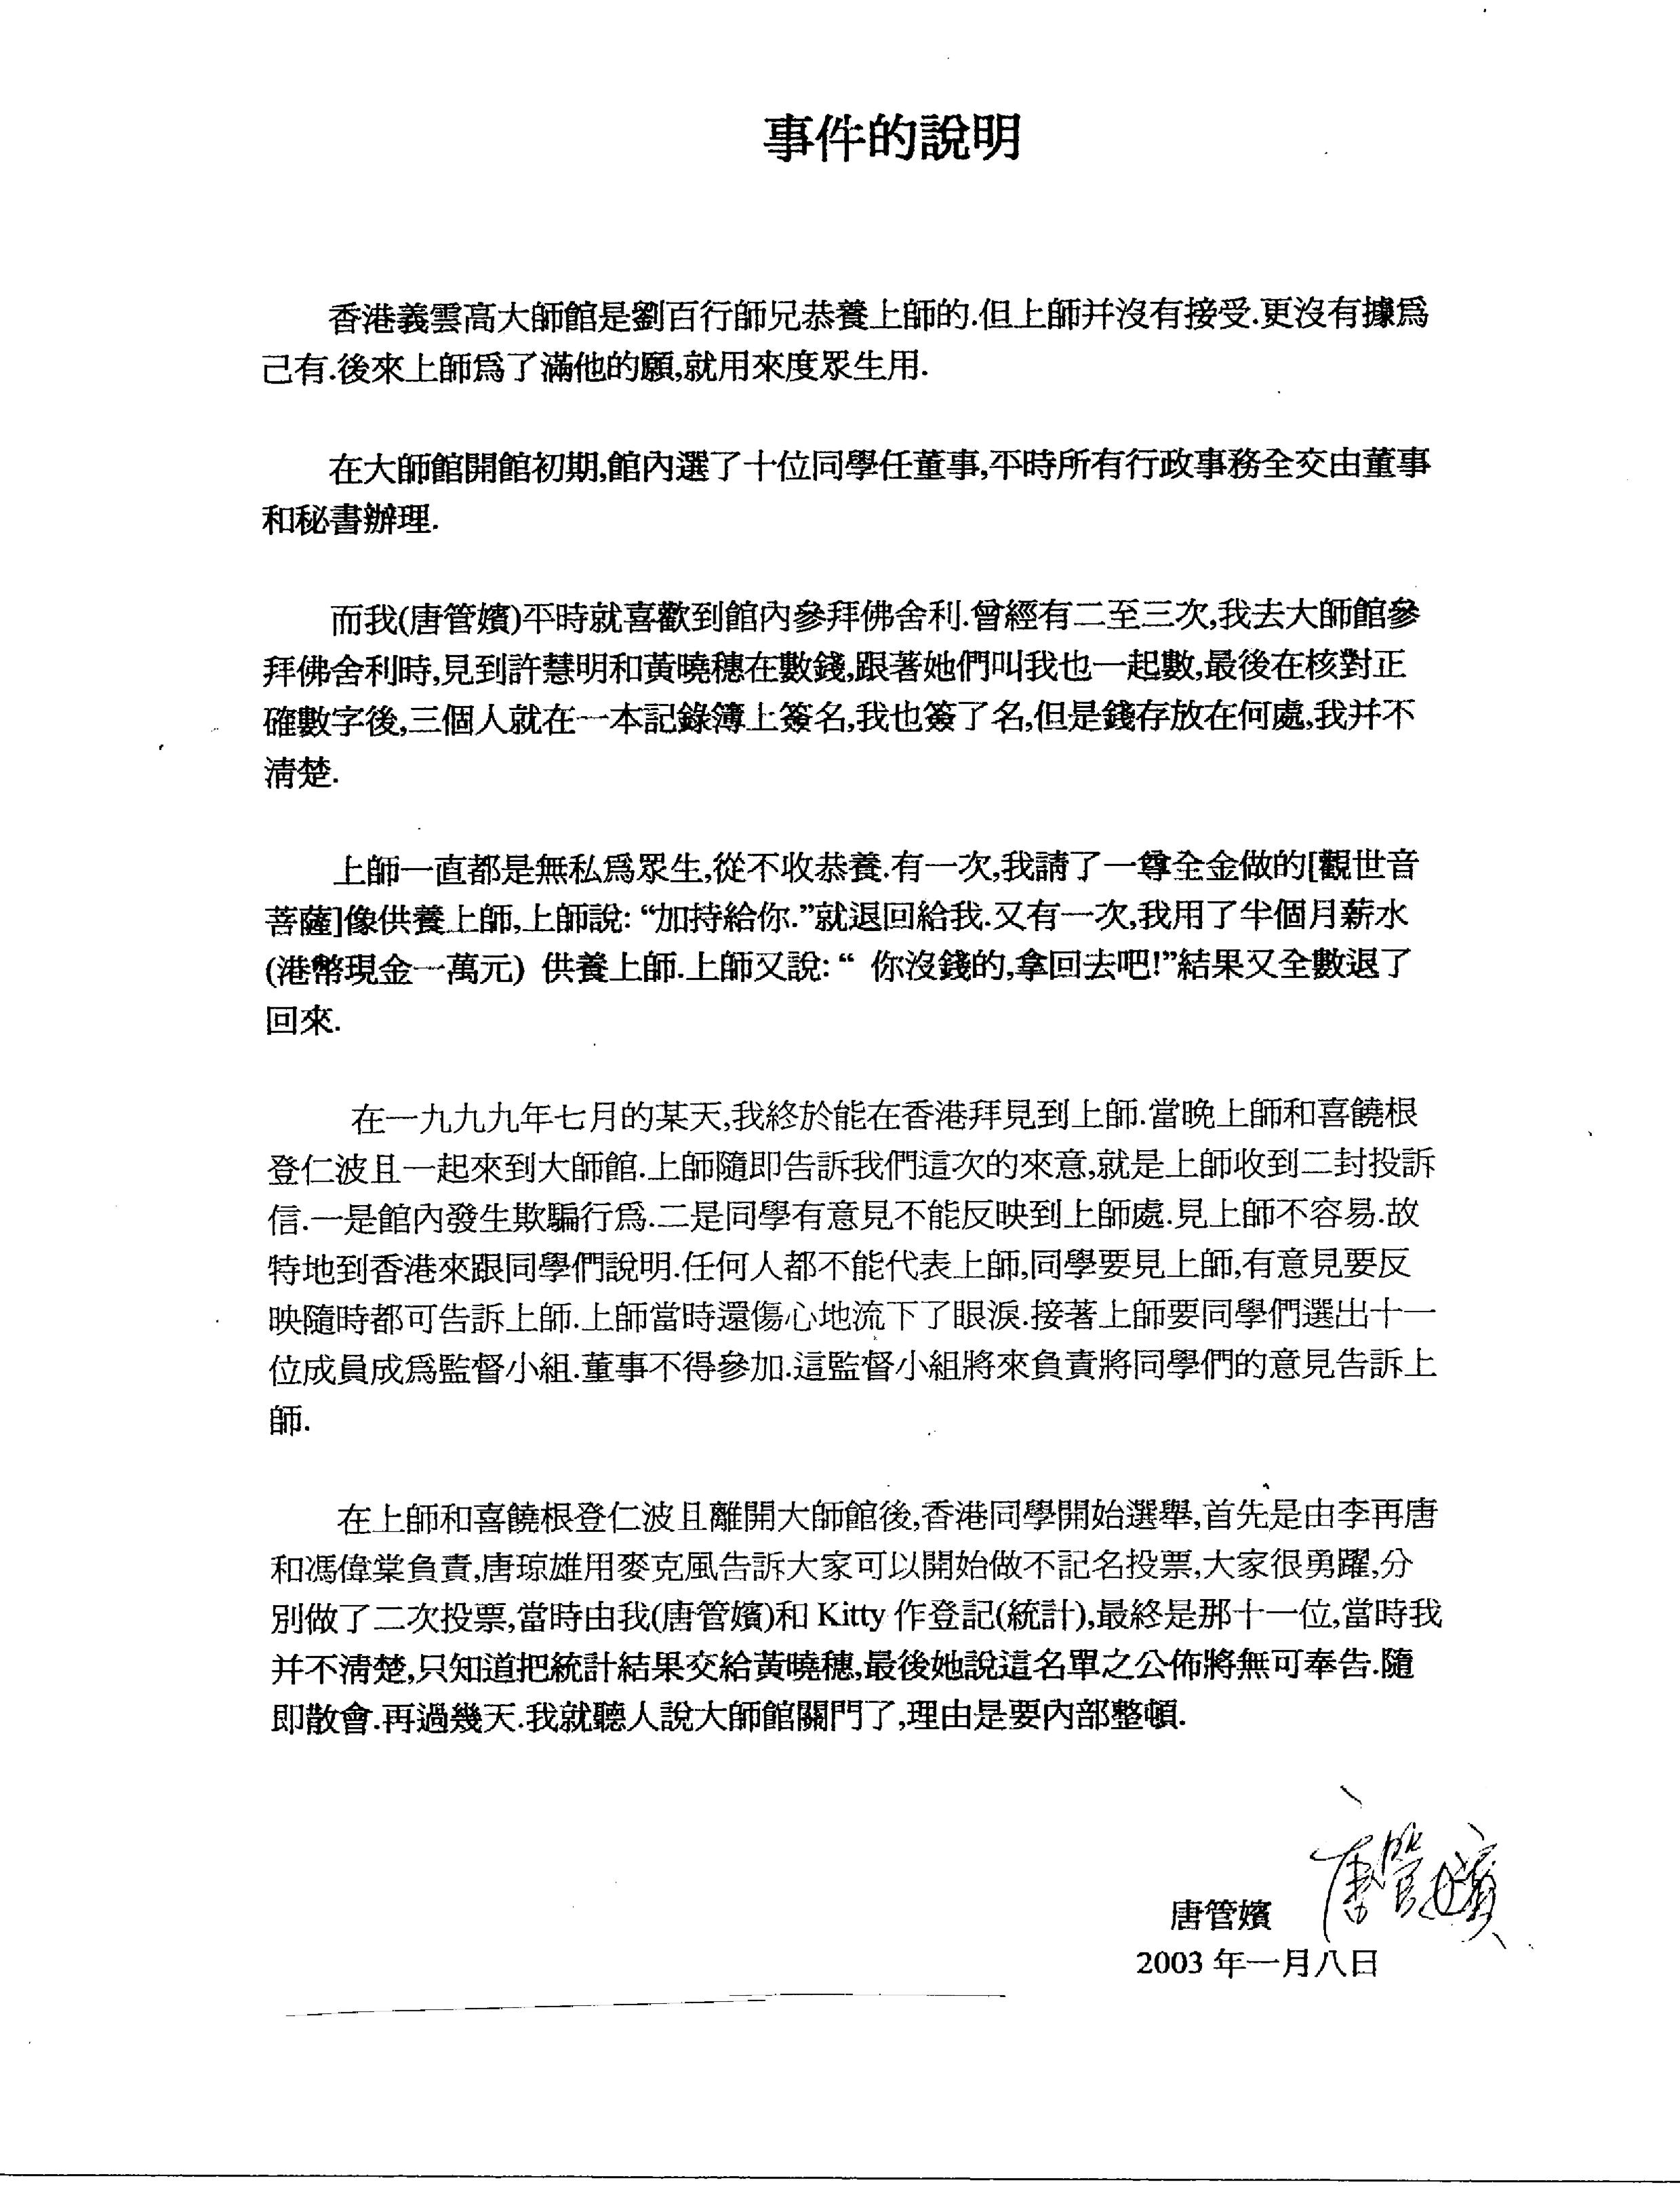 香港法院重判黄晓穗诈骗案 还第三世多杰羌佛清白 第3张